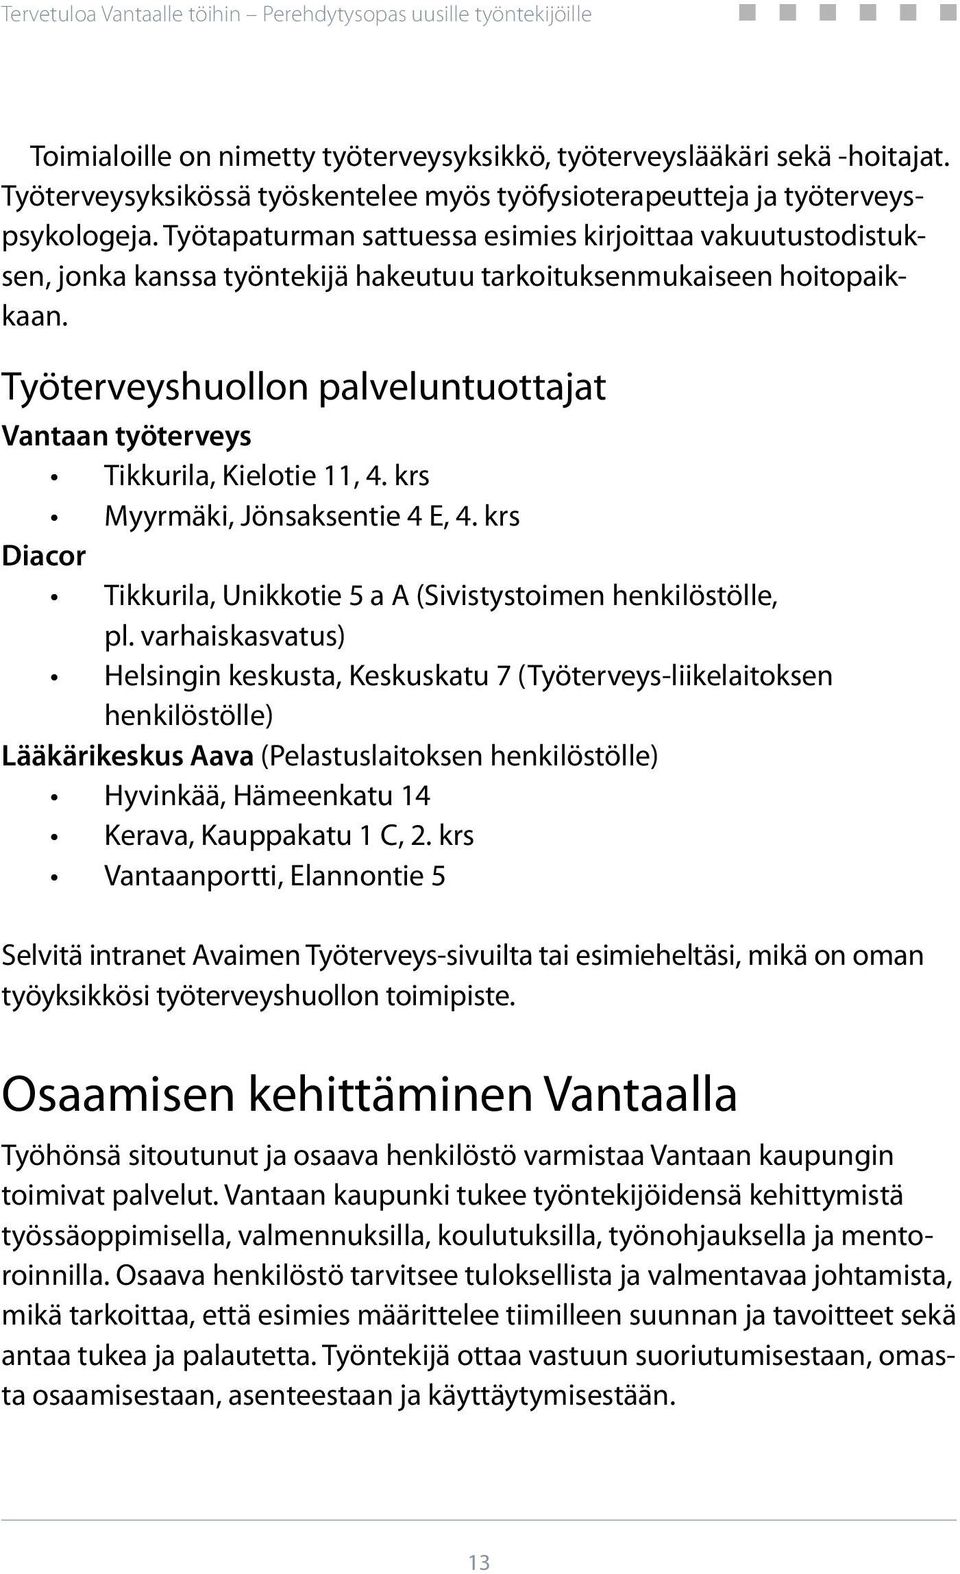 Työterveyshuollon palveluntuottajat Vantaan työterveys Tikkurila, Kielotie 11, 4. krs Myyrmäki, Jönsaksentie 4 E, 4. krs Diacor Tikkurila, Unikkotie 5 a A (Sivistystoimen henkilöstölle, pl.